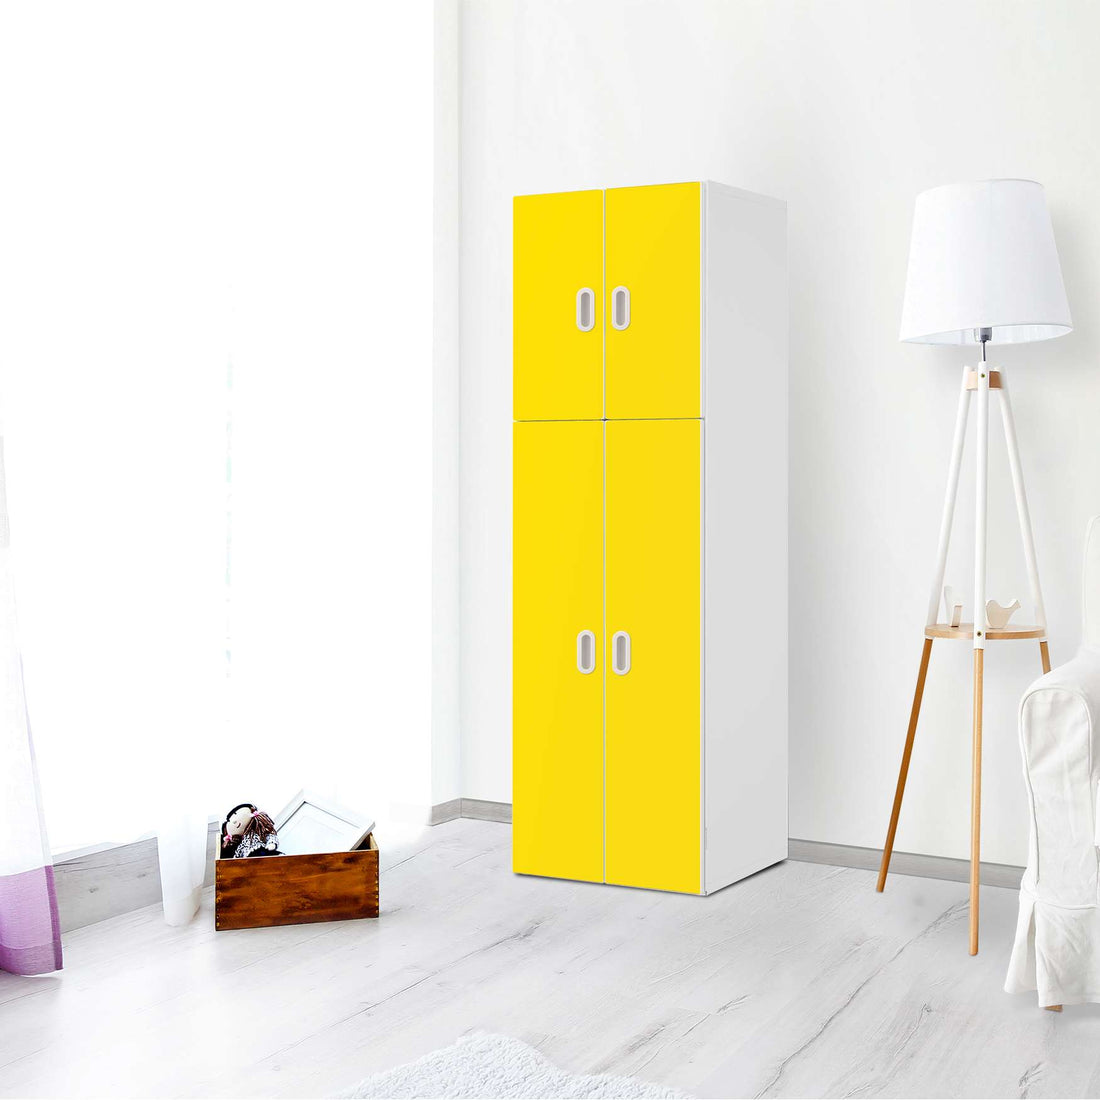 Selbstklebende Folie Gelb Dark - IKEA Stuva / Fritids kombiniert - 2 große Türen und 2 kleine Türen - Kinderzimmer